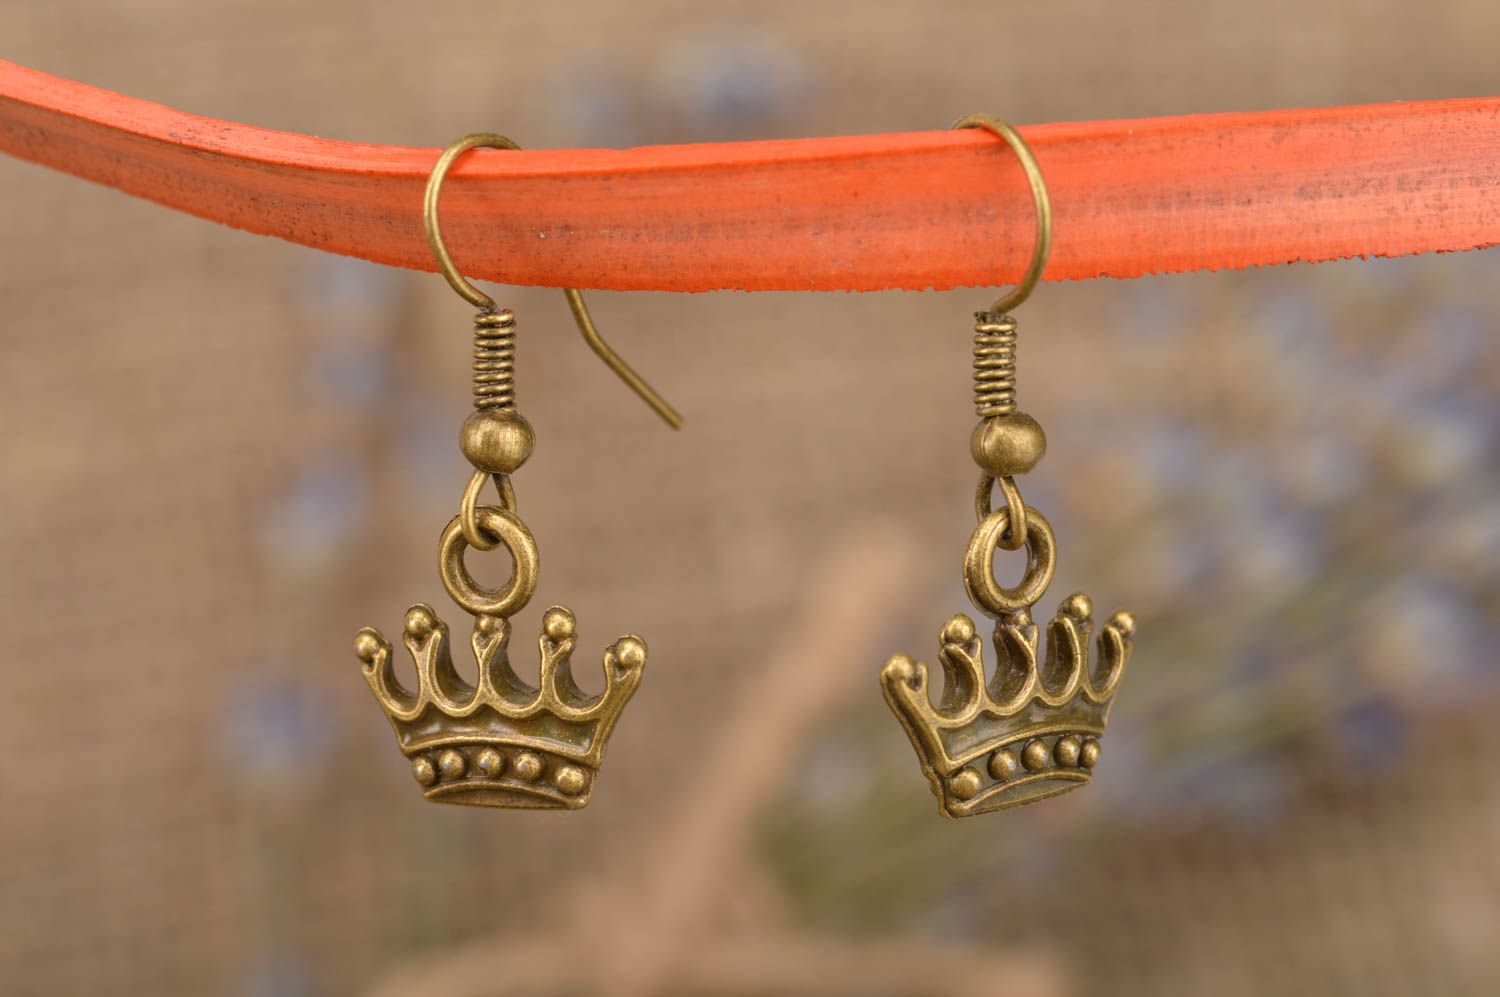 Небольшие серьги из металла Корона под бронзу на крючках украшение ручной работы фото 1